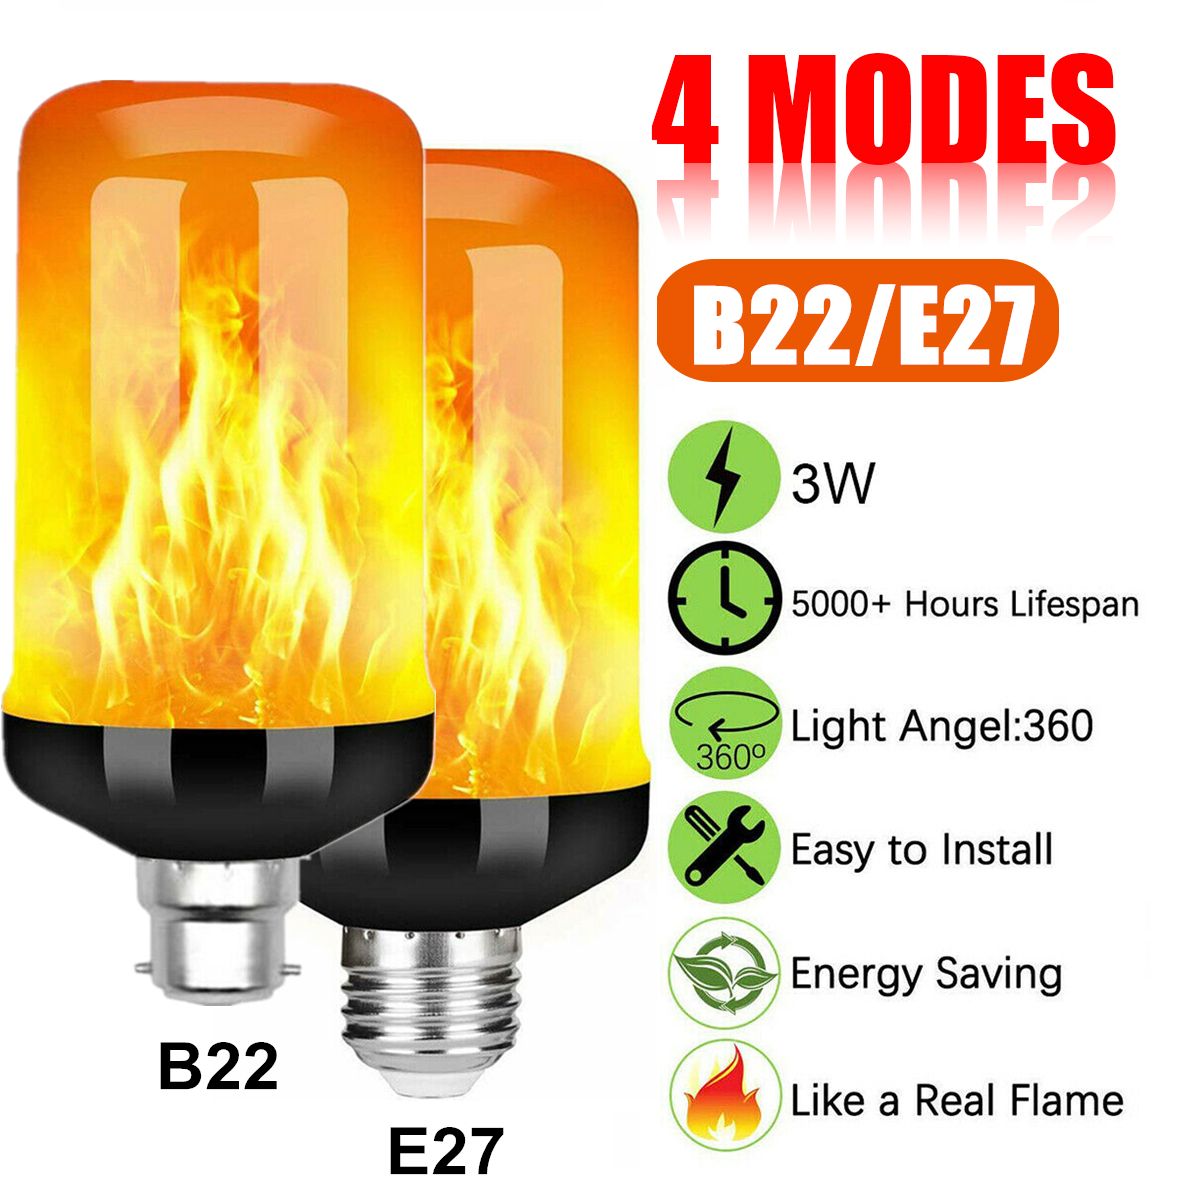 E27-B22-5W-LED-Flicker-Flame-Light-Bulb-4-Modes-Burning-Fire-Effect-Gravity-Sensor-Lamp-AC85-265V-1691896